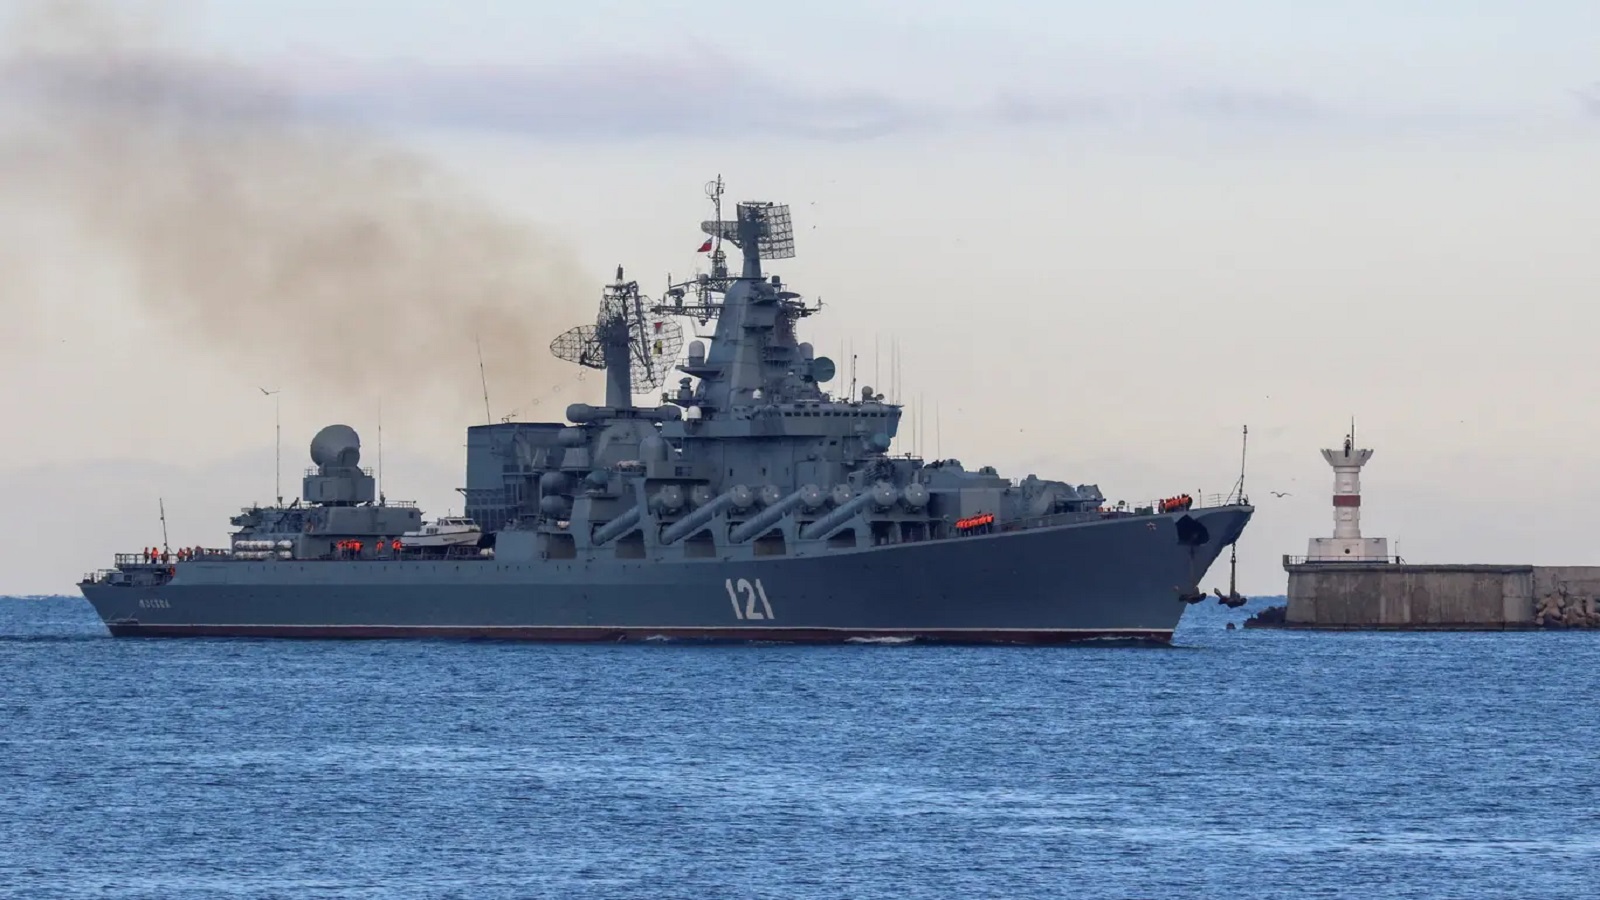 روسيا تُمنى بأكبر خسائرها..غرق الطراد "موسكفا"في البحر الاسود